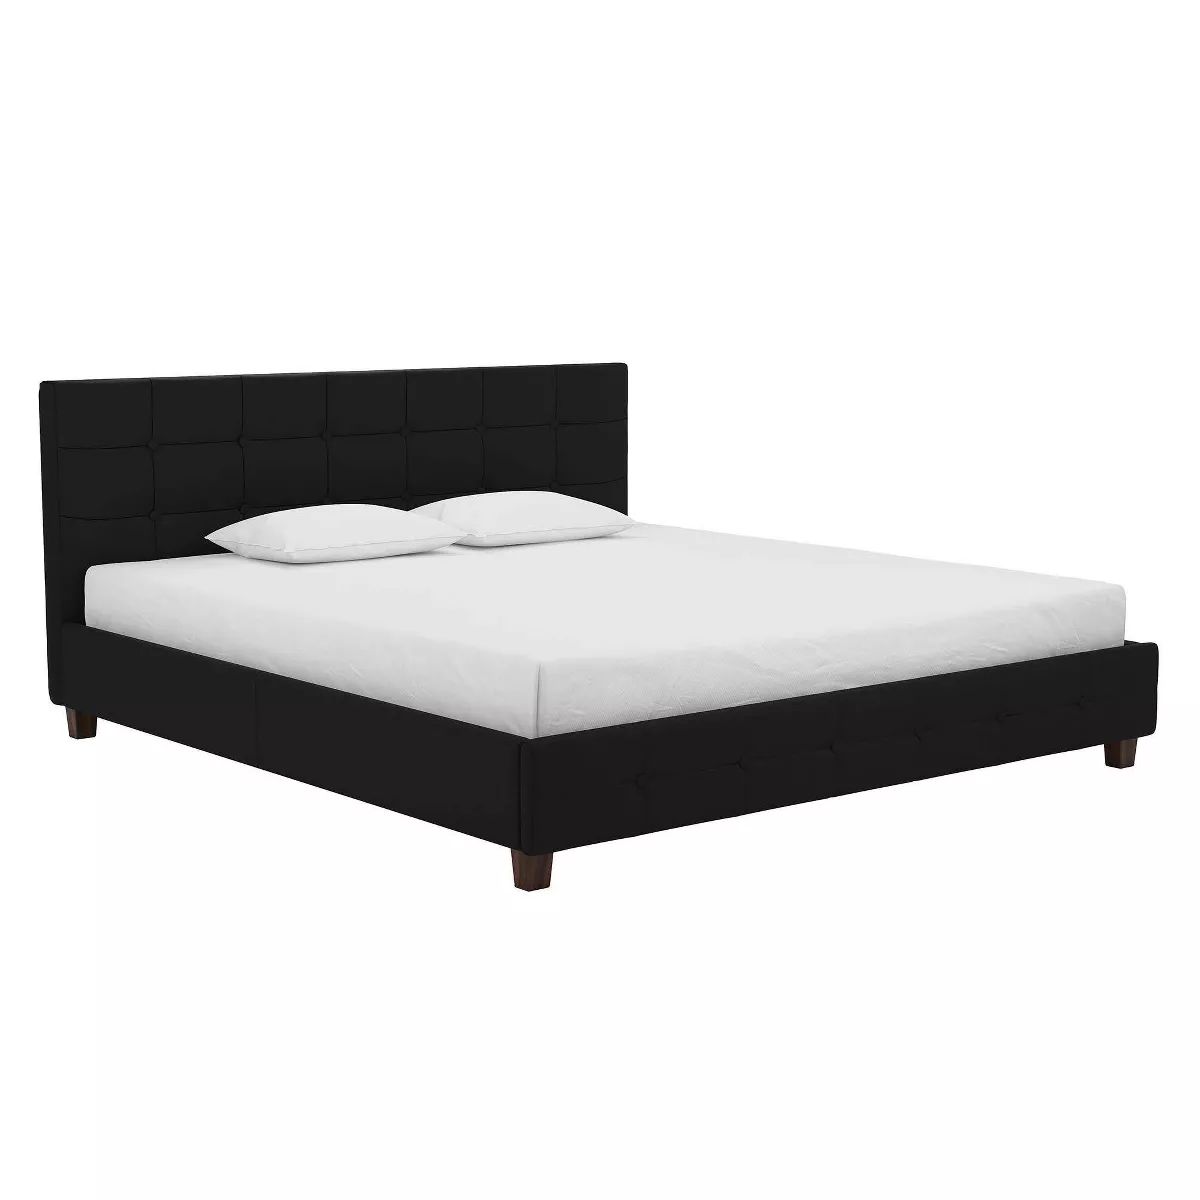 King Rosalie Upholstered Bed Black - Room & Joy | Target